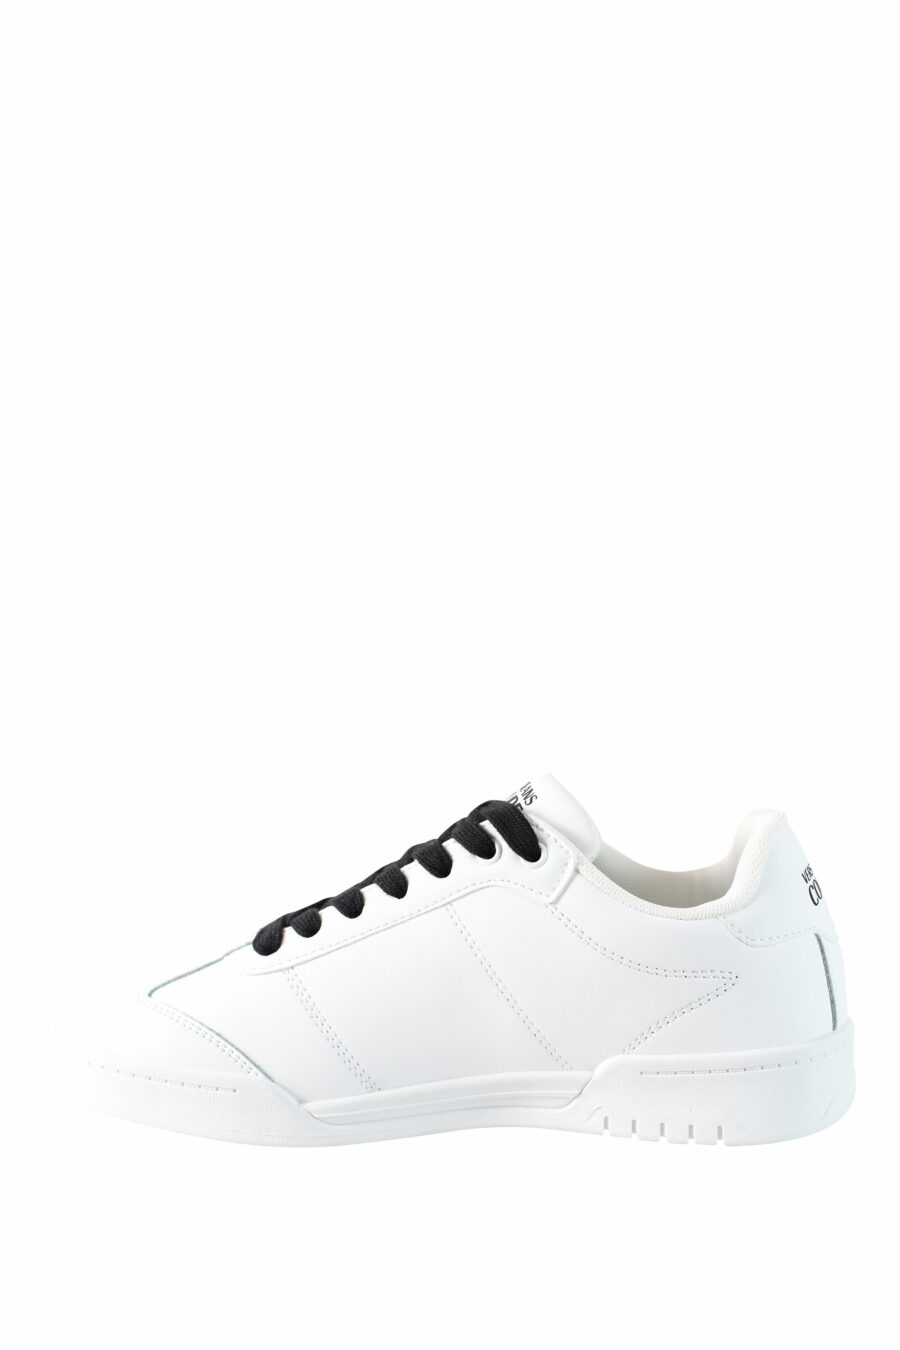 Zapatillas blancas con logo circular y cordones negros - IMG 4490